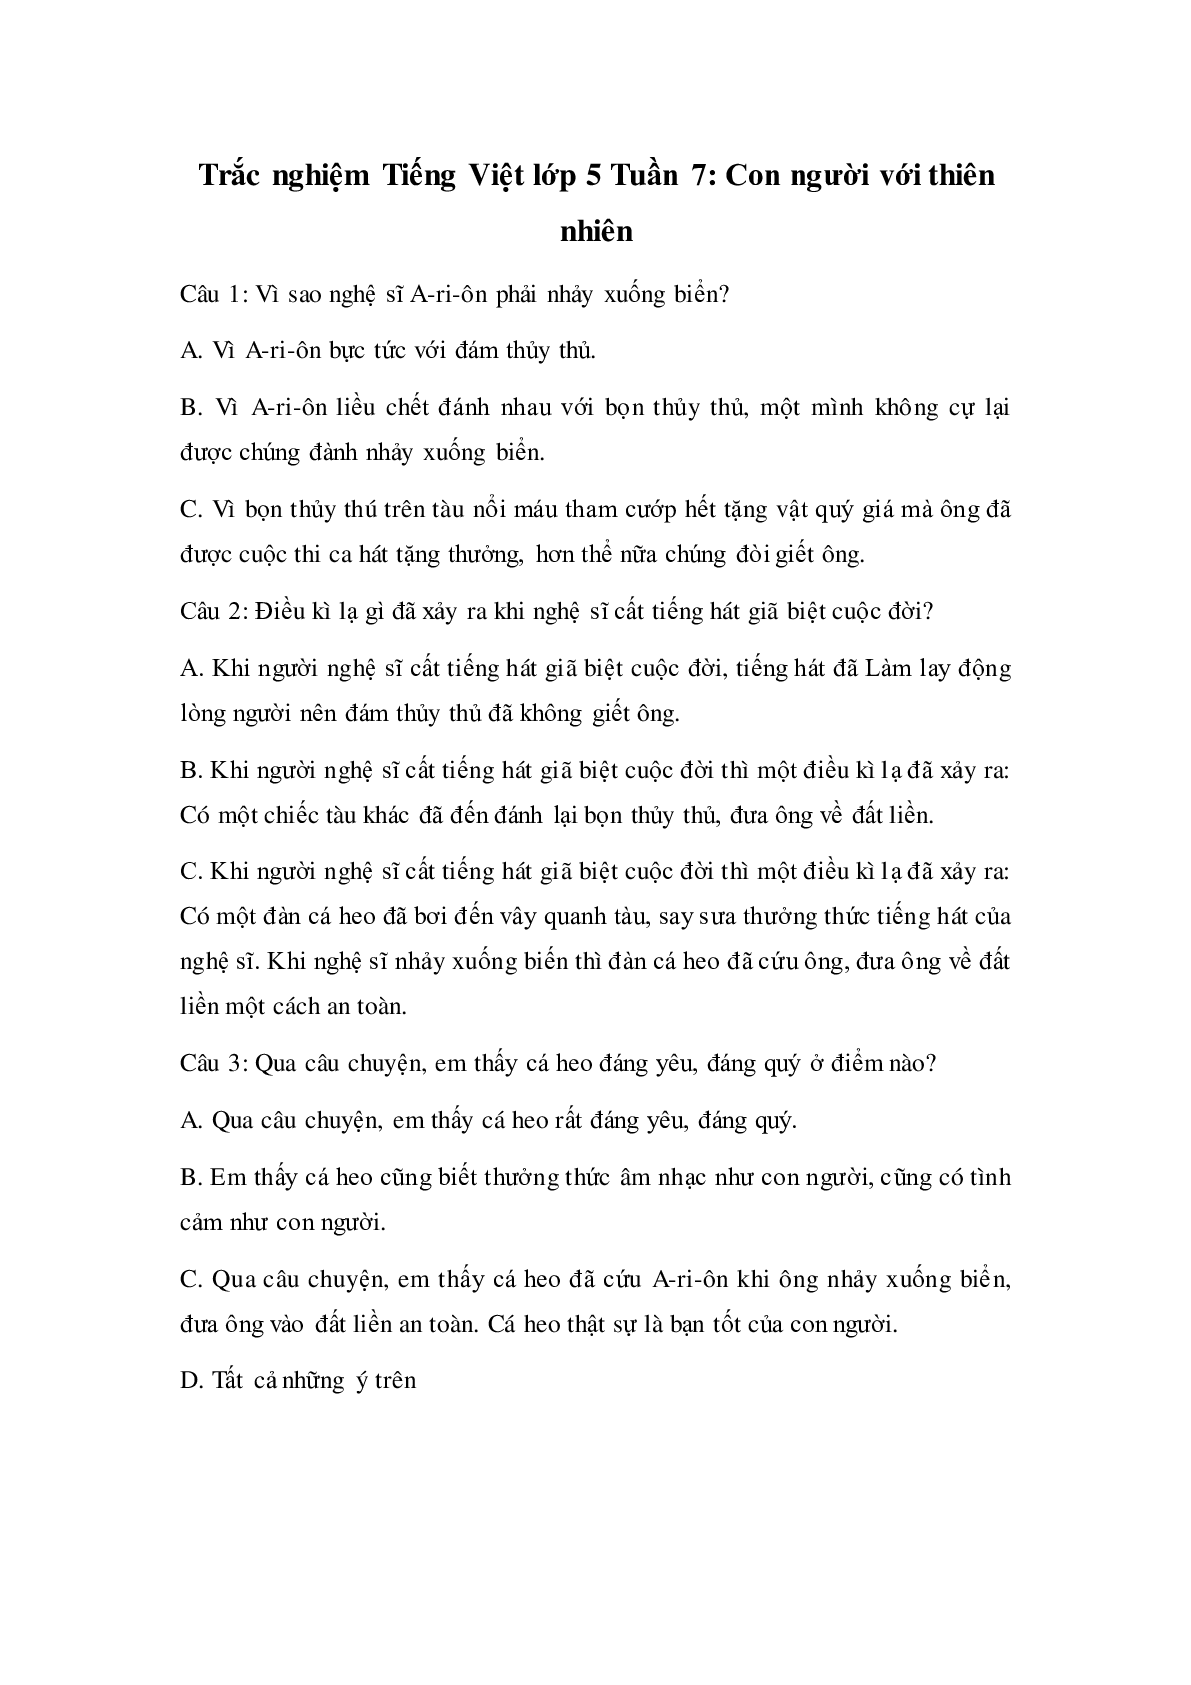 Trắc nghiệm Tiếng Việt lớp 5: Tuần 7 có đáp án (trang 1)